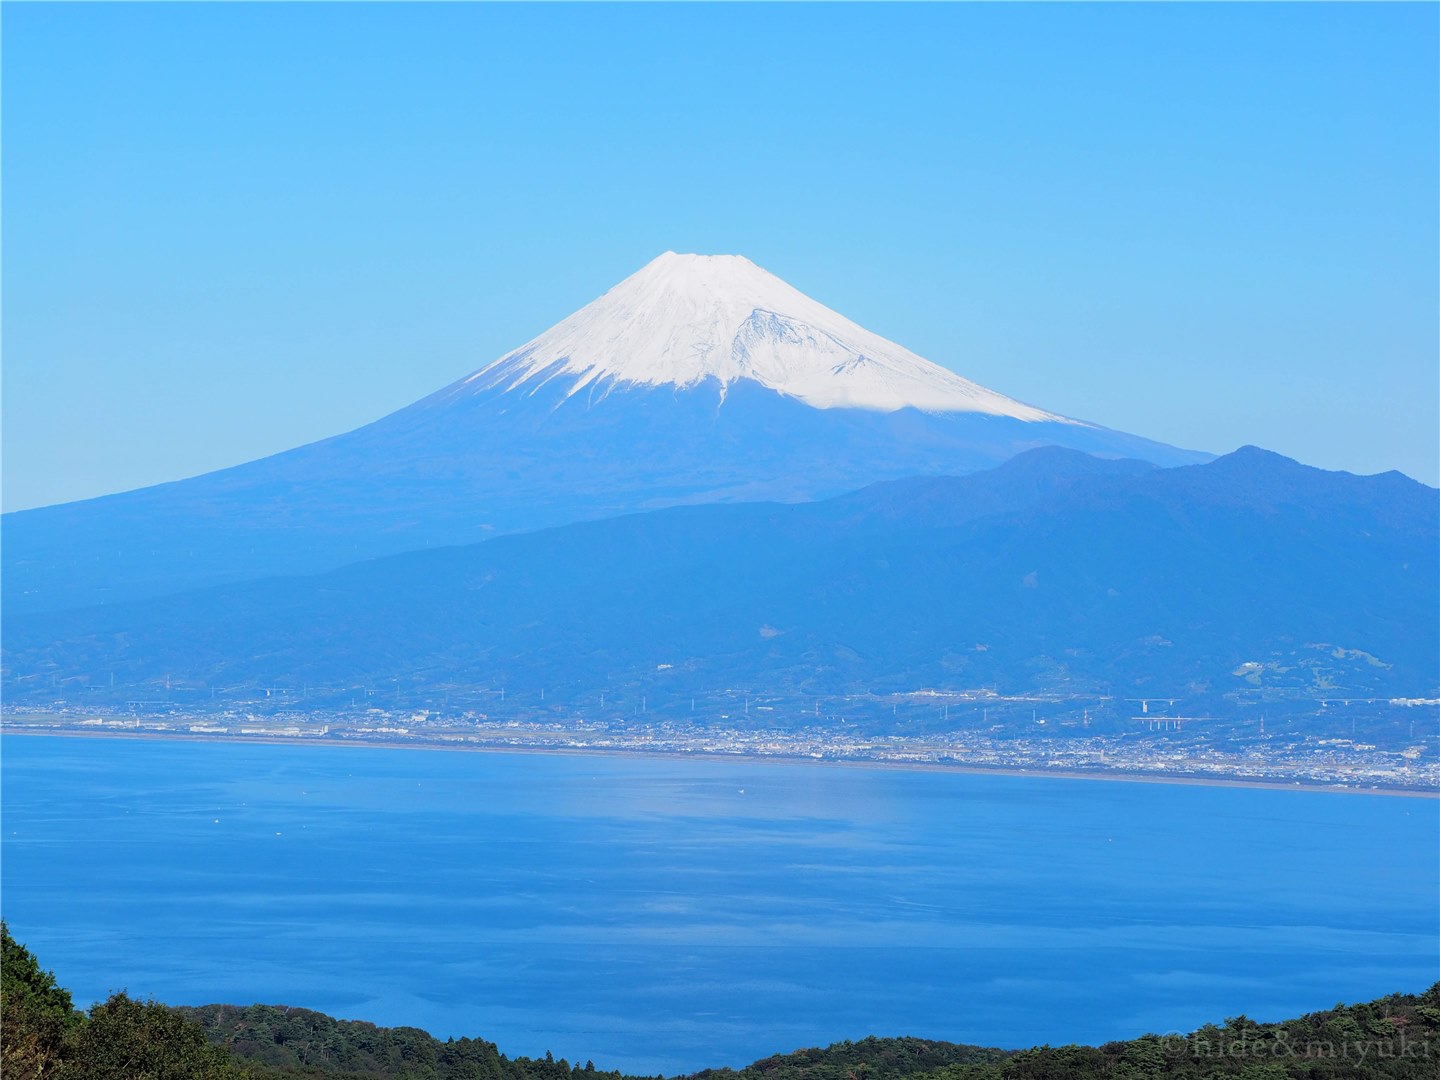 【絶景スポット】西伊豆のだるま山高原レストハウス裏からの富士山x駿河湾の景色はホントに美しいんです…【静岡】